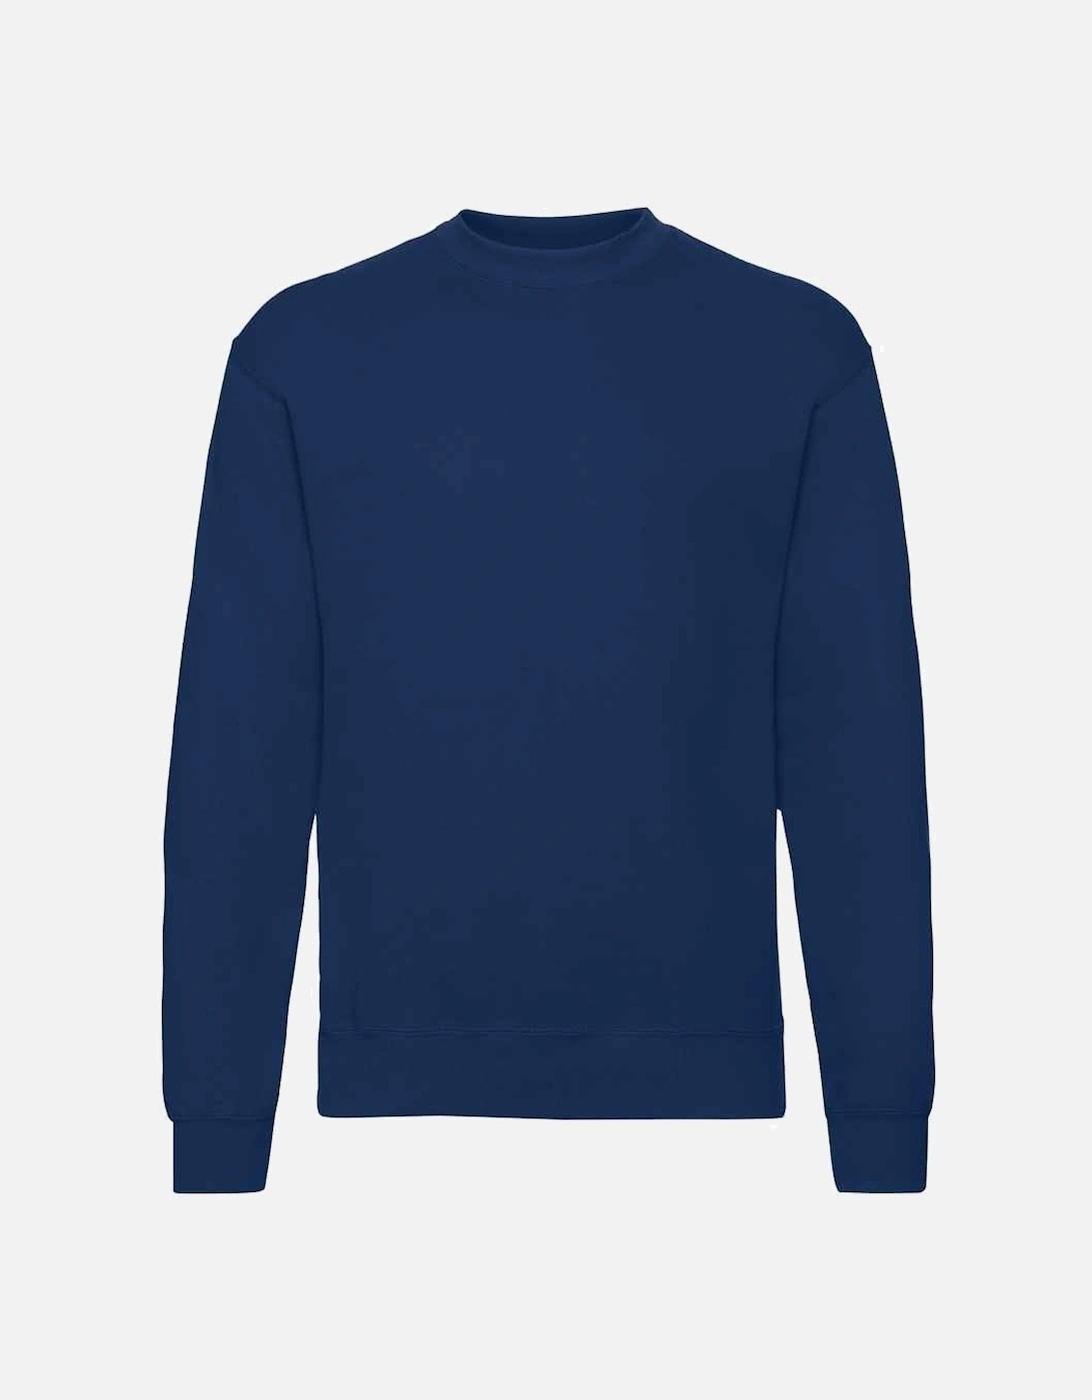 Unisex Adult Classic Drop Shoulder Sweatshirt, 3 of 2